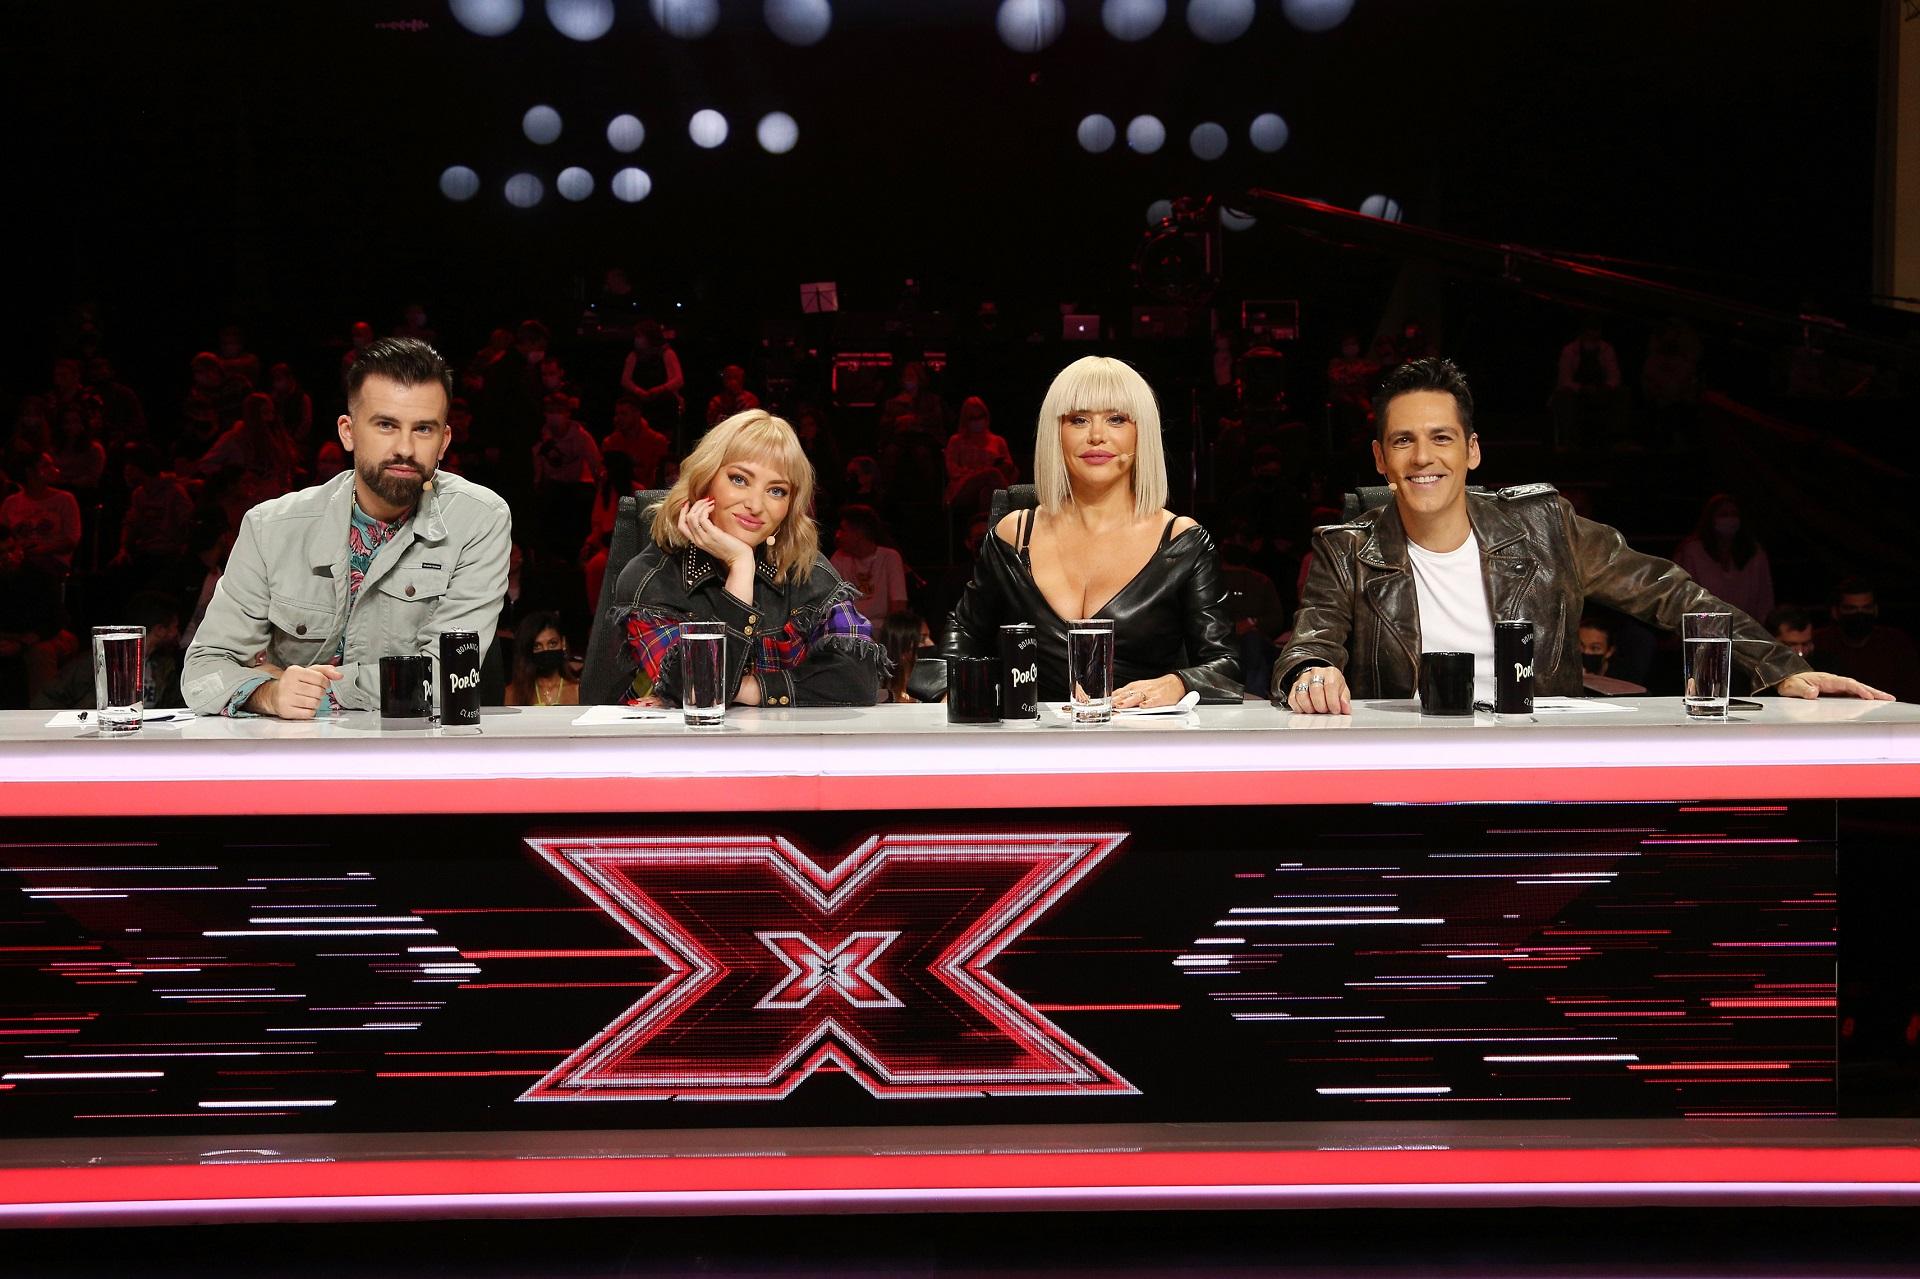 jurații X Factor 2021, florin ristei, delia, loredana și ștefan bănică, la mara juraților din sezonul 10 X Factor. Masa e cu negru și are un X roșu pe partea din față